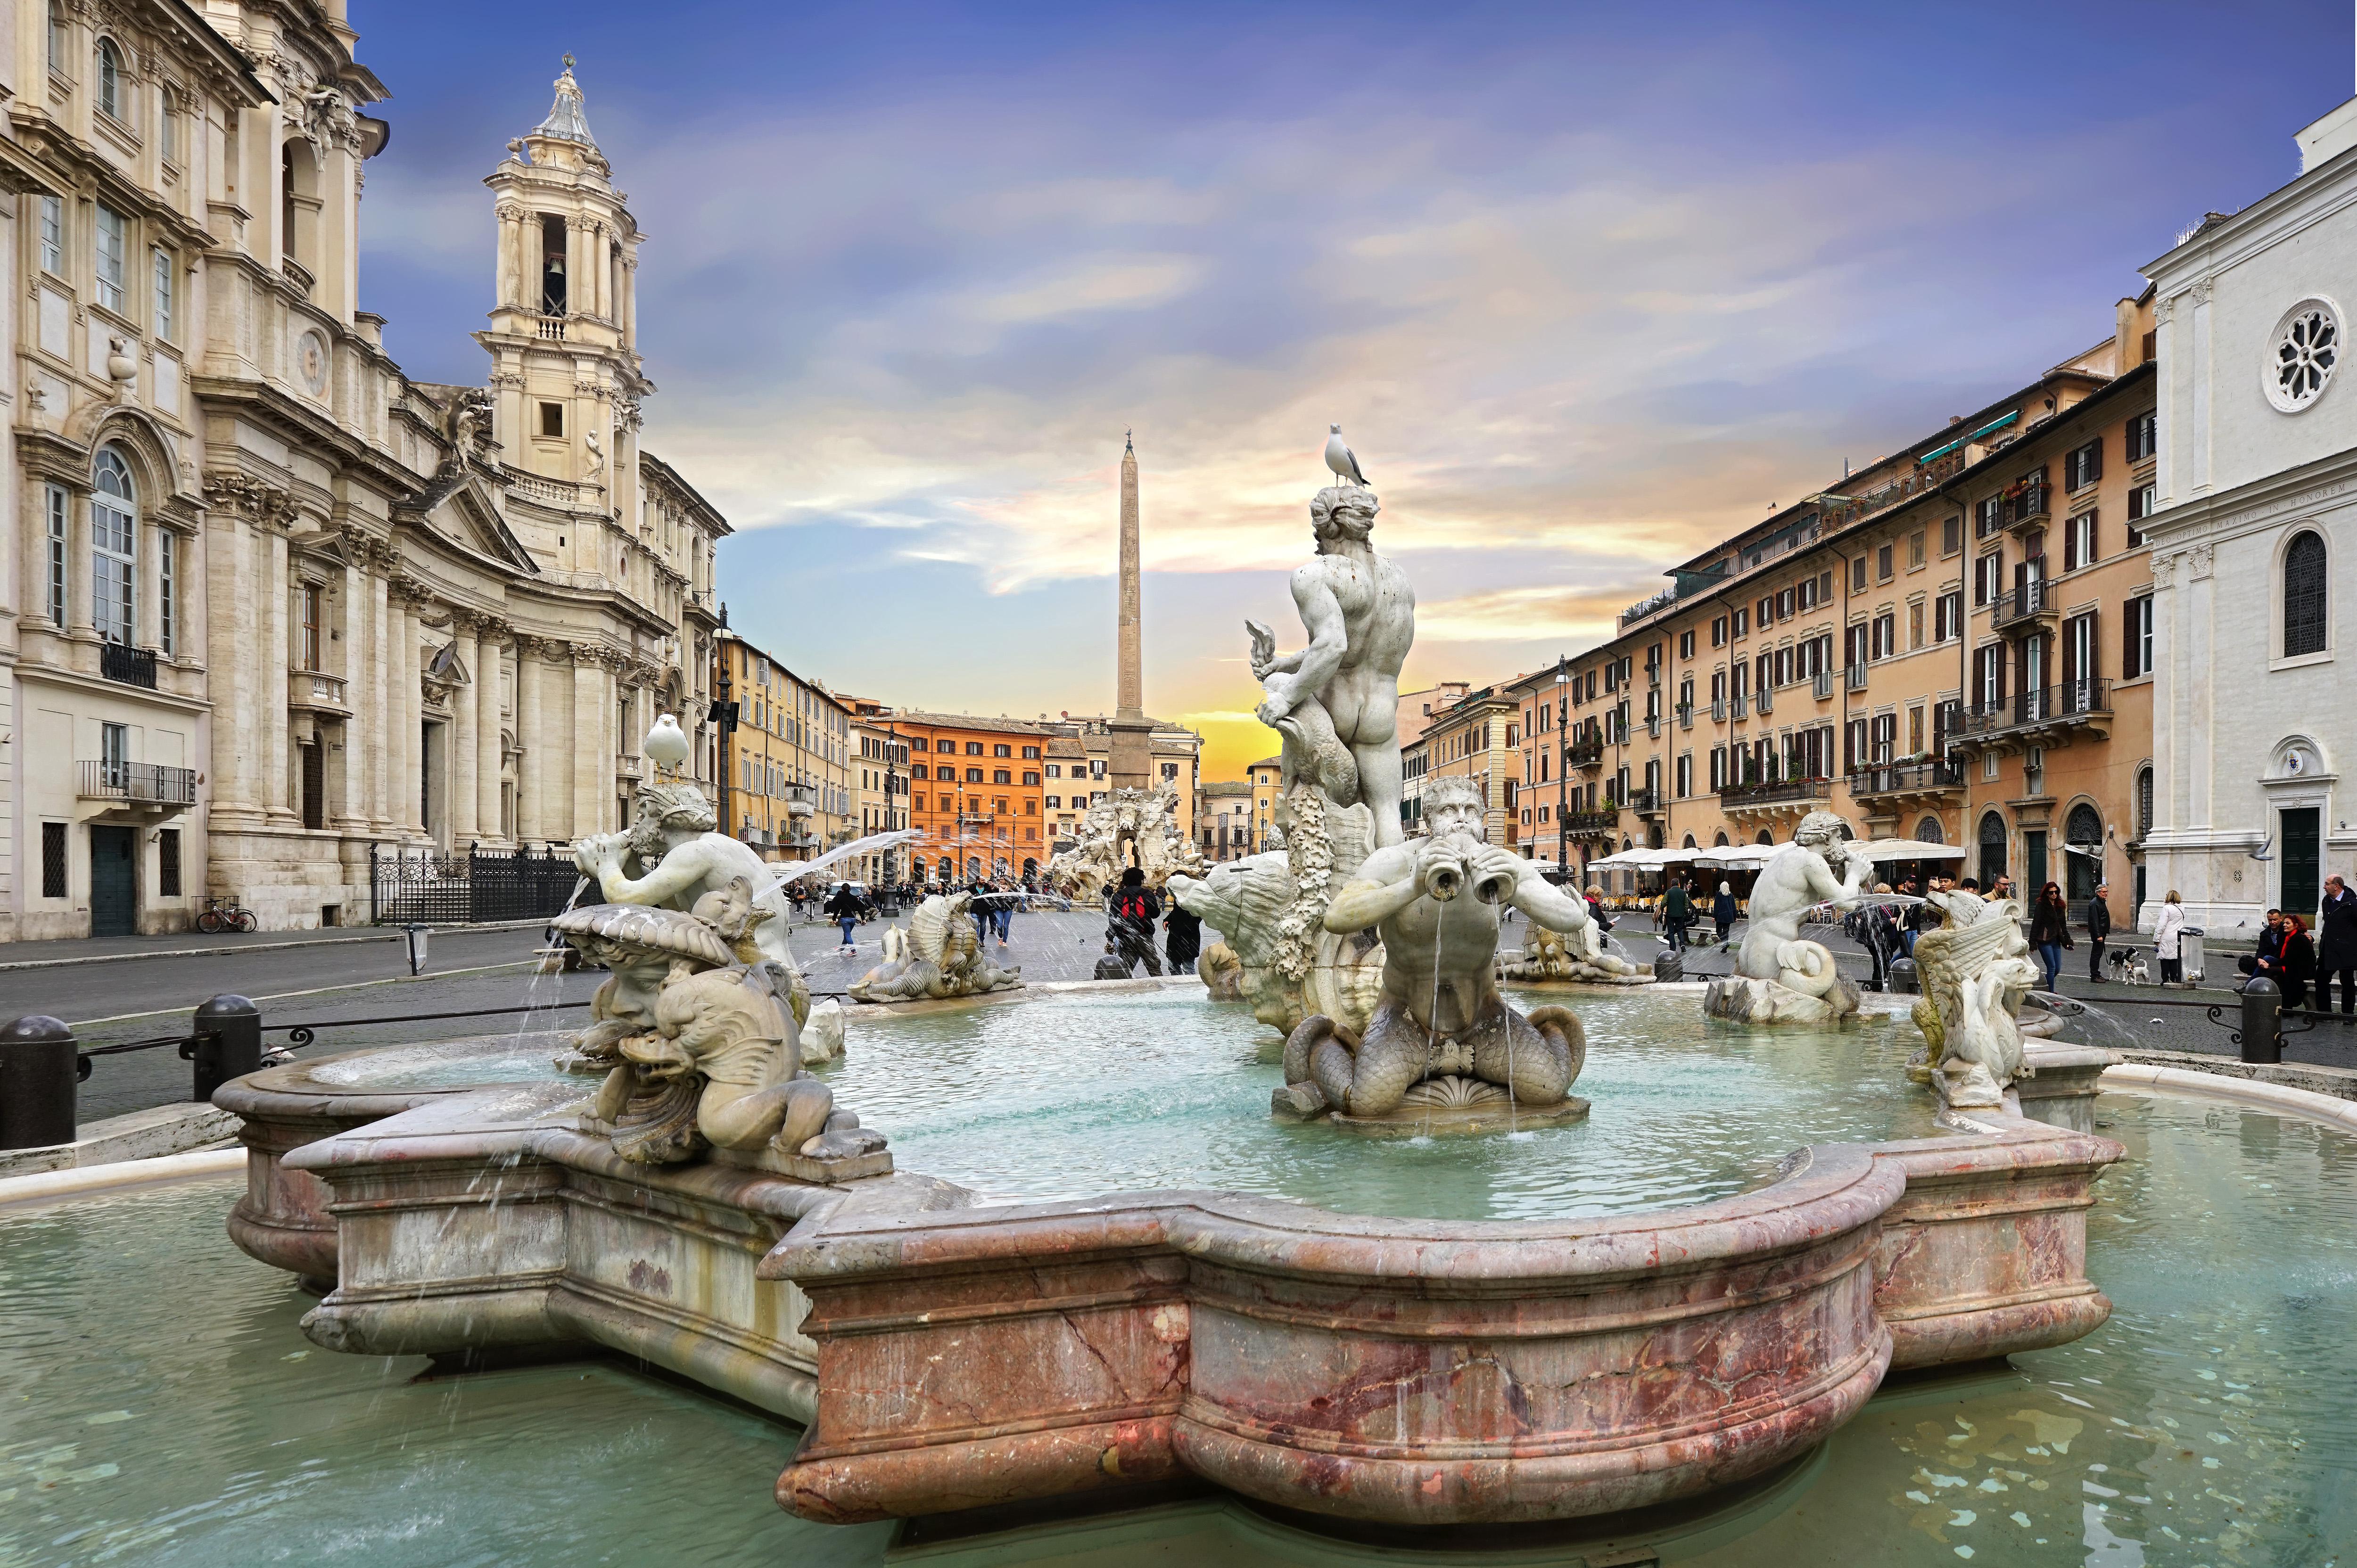 Color Photograph Jean Pierre De Neef - La Piazza Navona, Rome, Italie 2019 - Photographie couleur encadrée